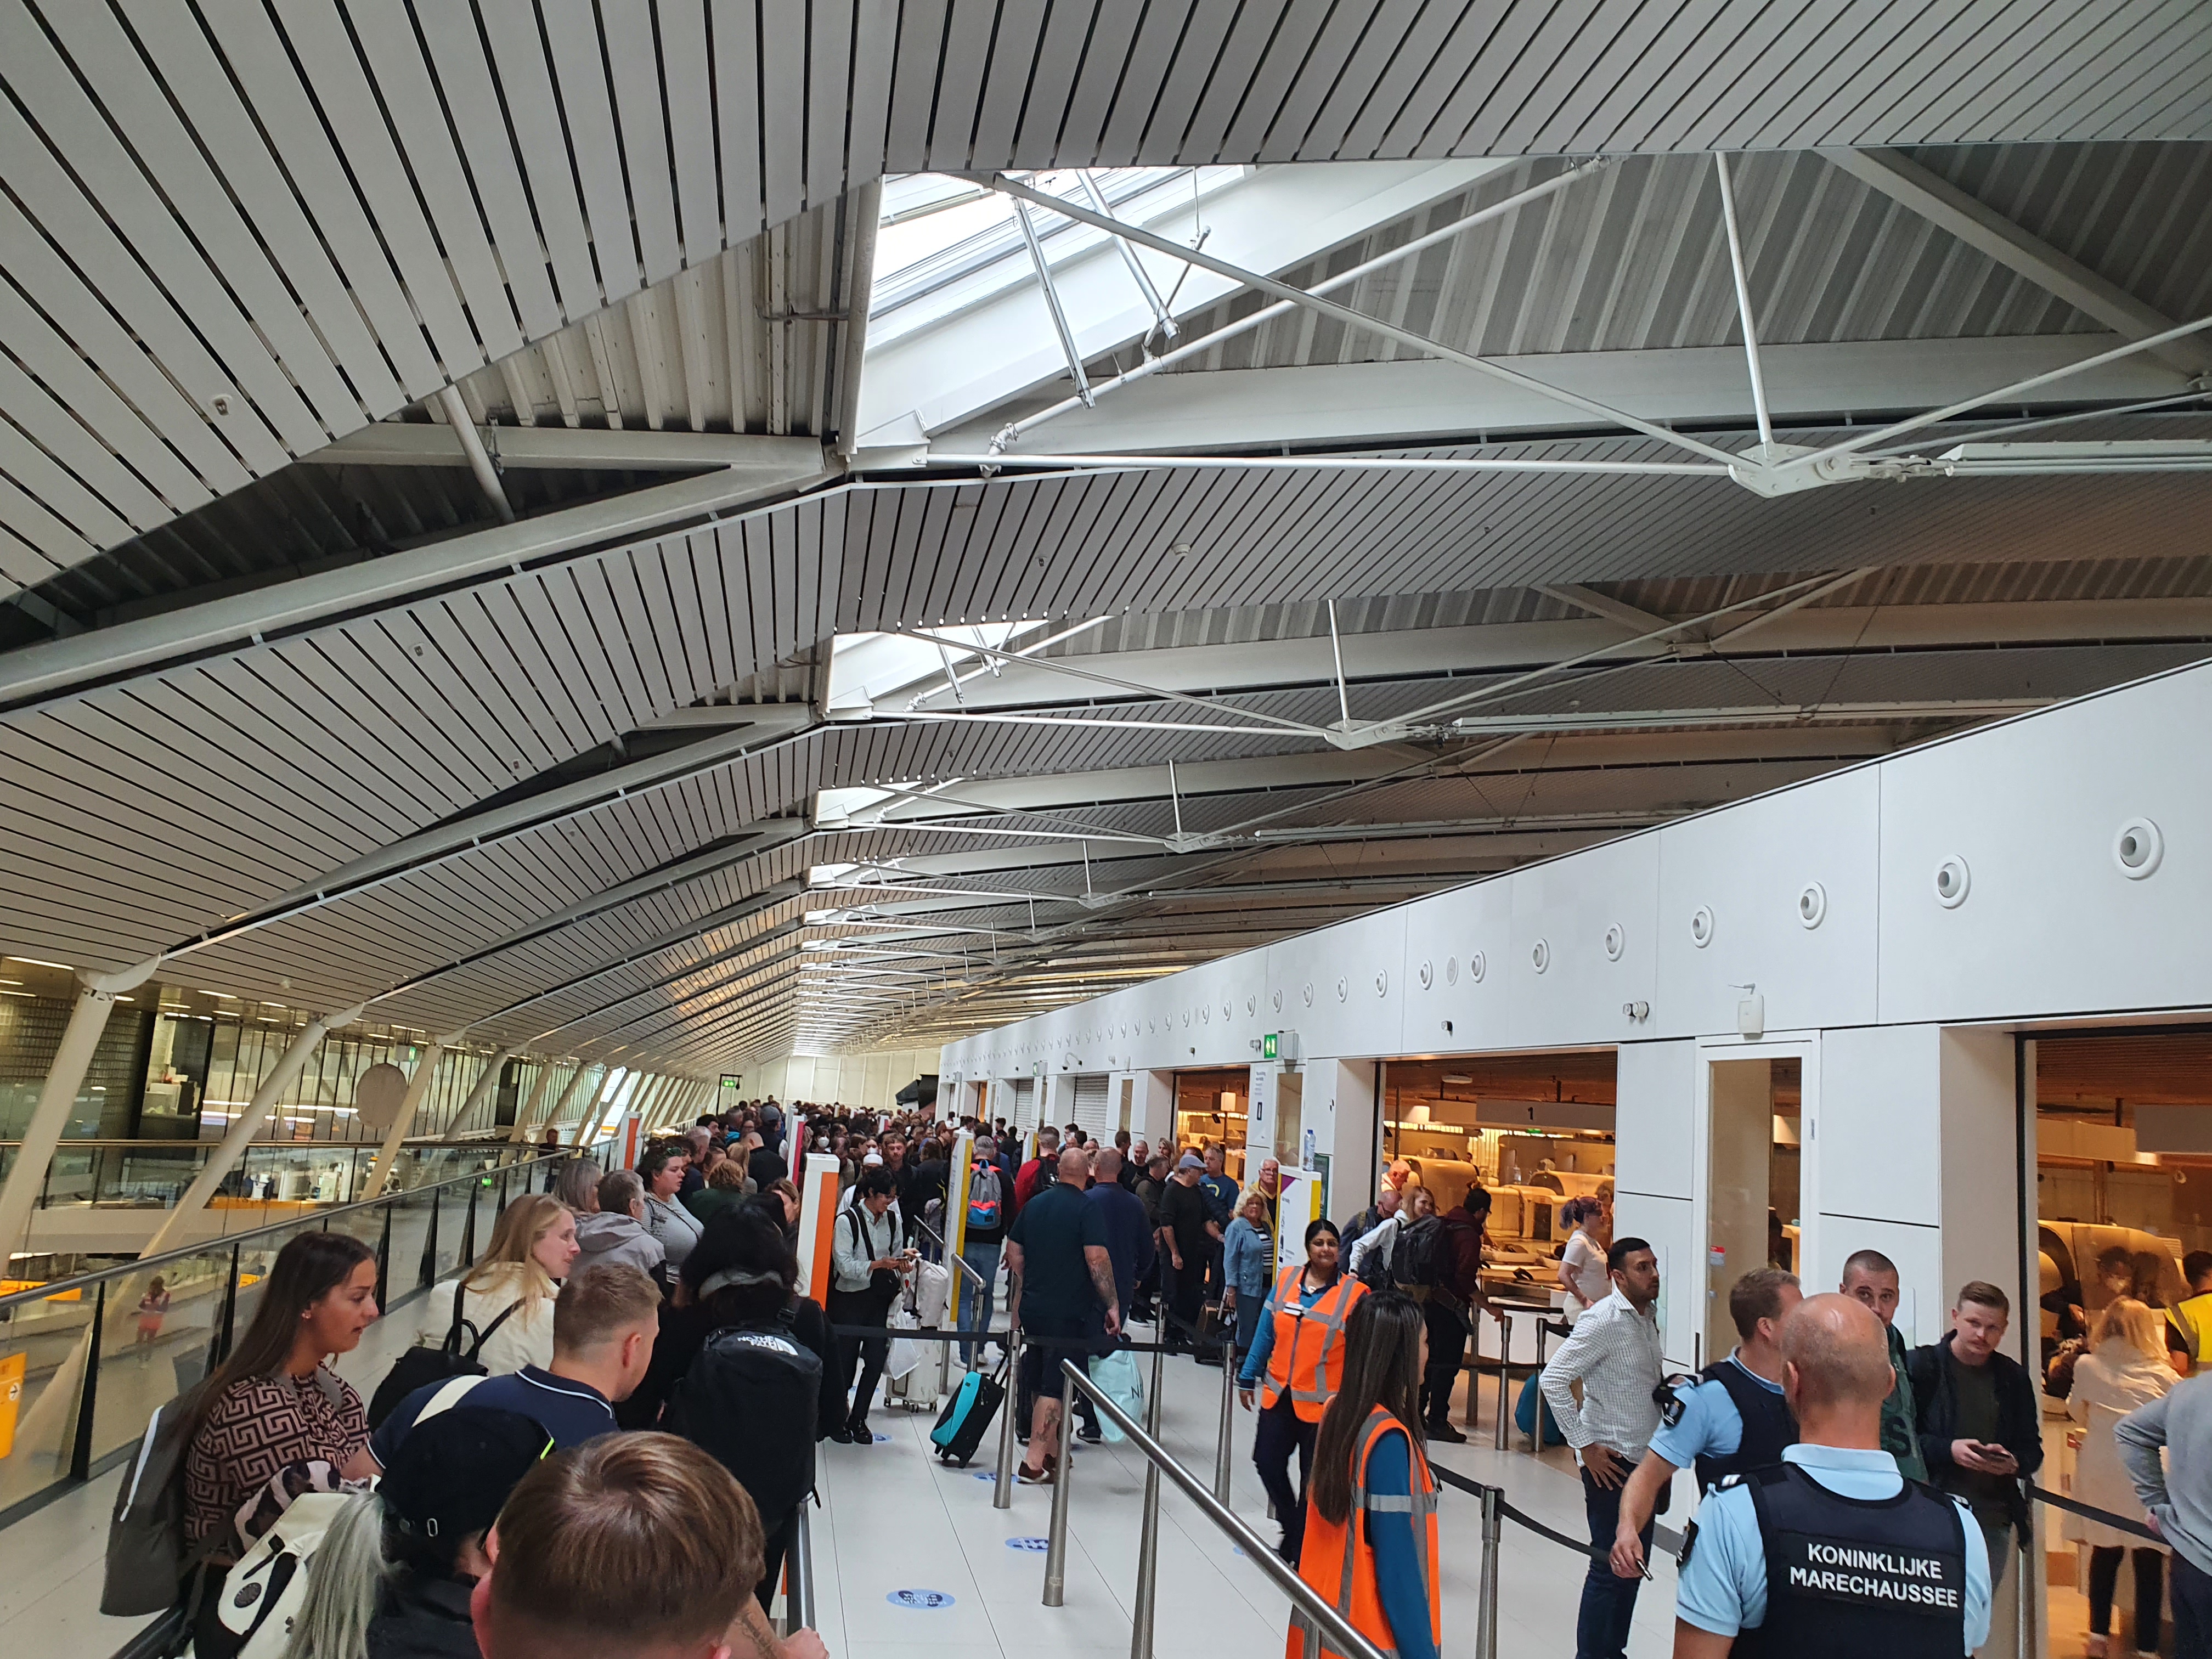 지난 19일(현지시각) 네덜란드 암스테르담 스키폴 국제공항의 보안 검색대를 통과하기 위해 줄을 선 승객들의 모습. 최근 인력난 문제를 겪고 있는 탓에 이날 스키폴 공항 보안검색대는 총 20여대 중 6~7대만 운영됐다. 공항취재기자단 제공